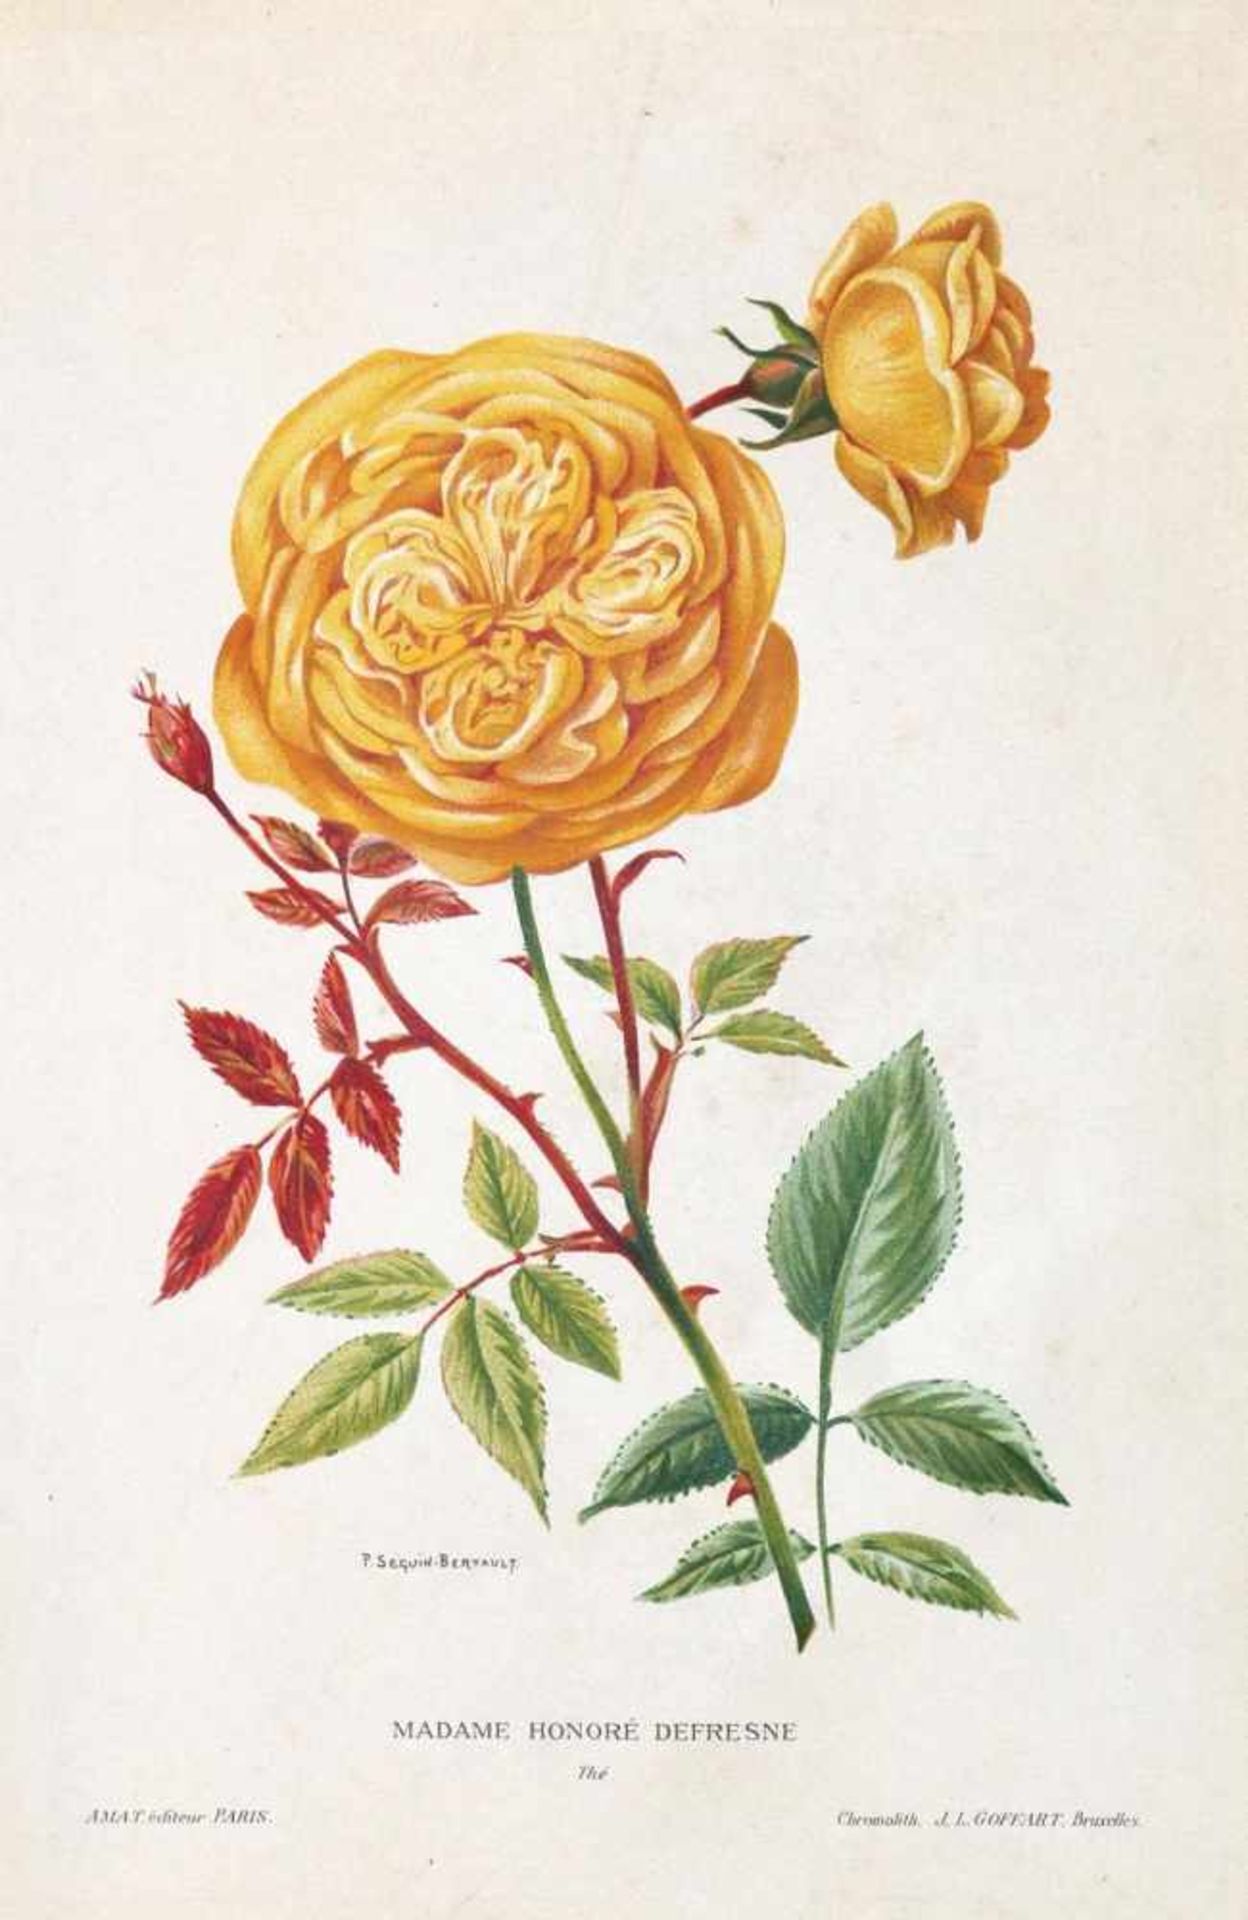 Rosendarstellungen.11 Bl. mit Rosendarstellungen. Kolor. od. in Farben gedruckte Kupferstiche u. ( - Bild 3 aus 3